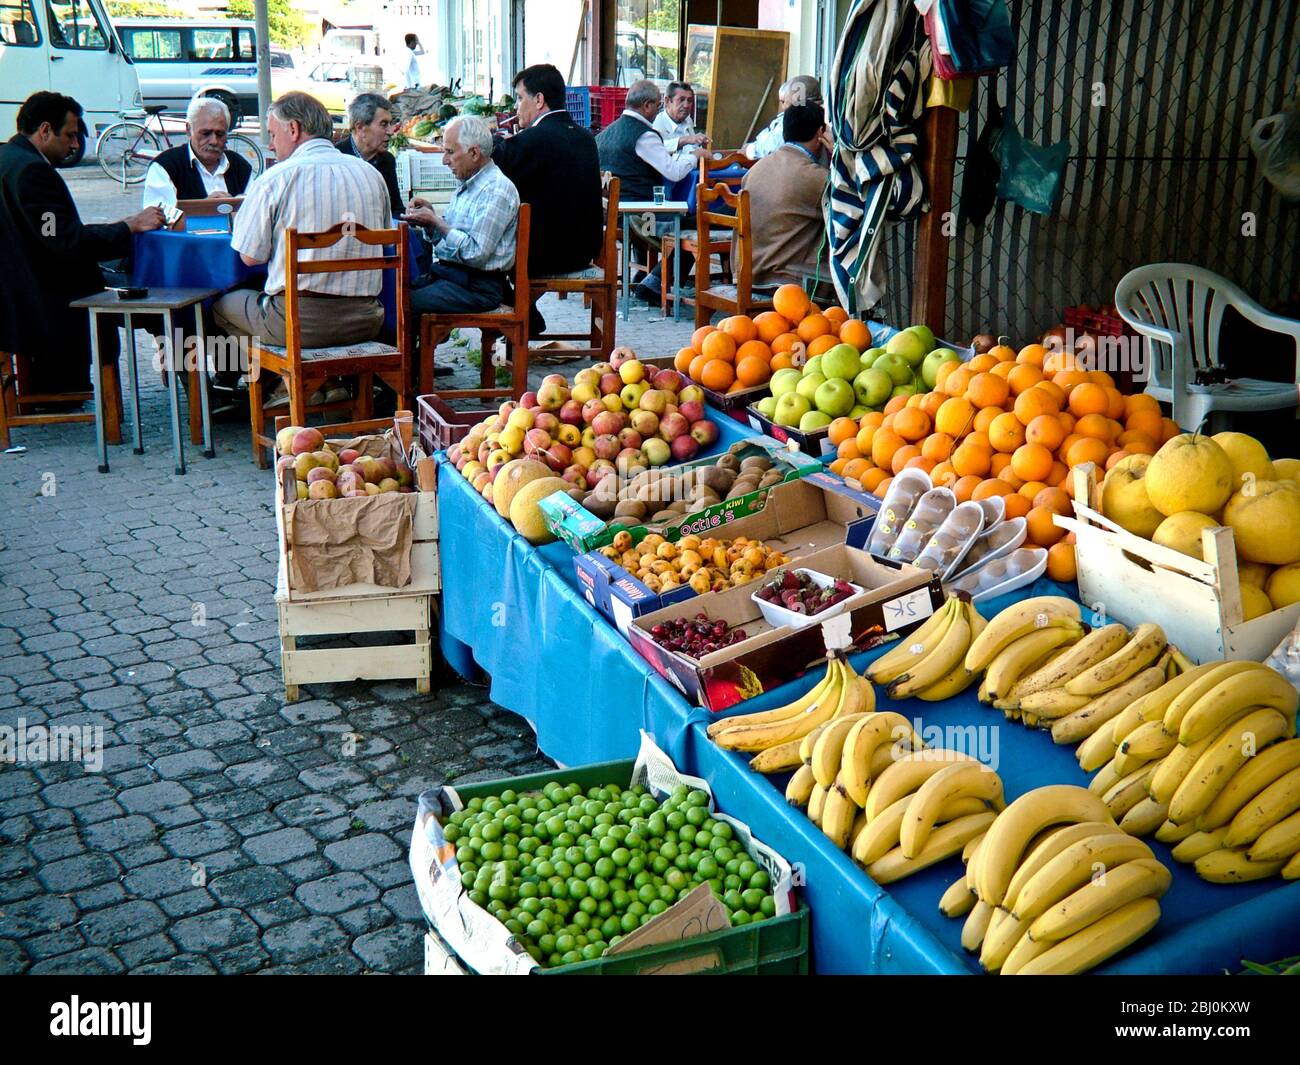 Bancarella di frutta all'esterno del negozio con uomini che giocano a gioco e bevono caffè in sottofondo. Dalyan, Anatlia, Turchia - Foto Stock